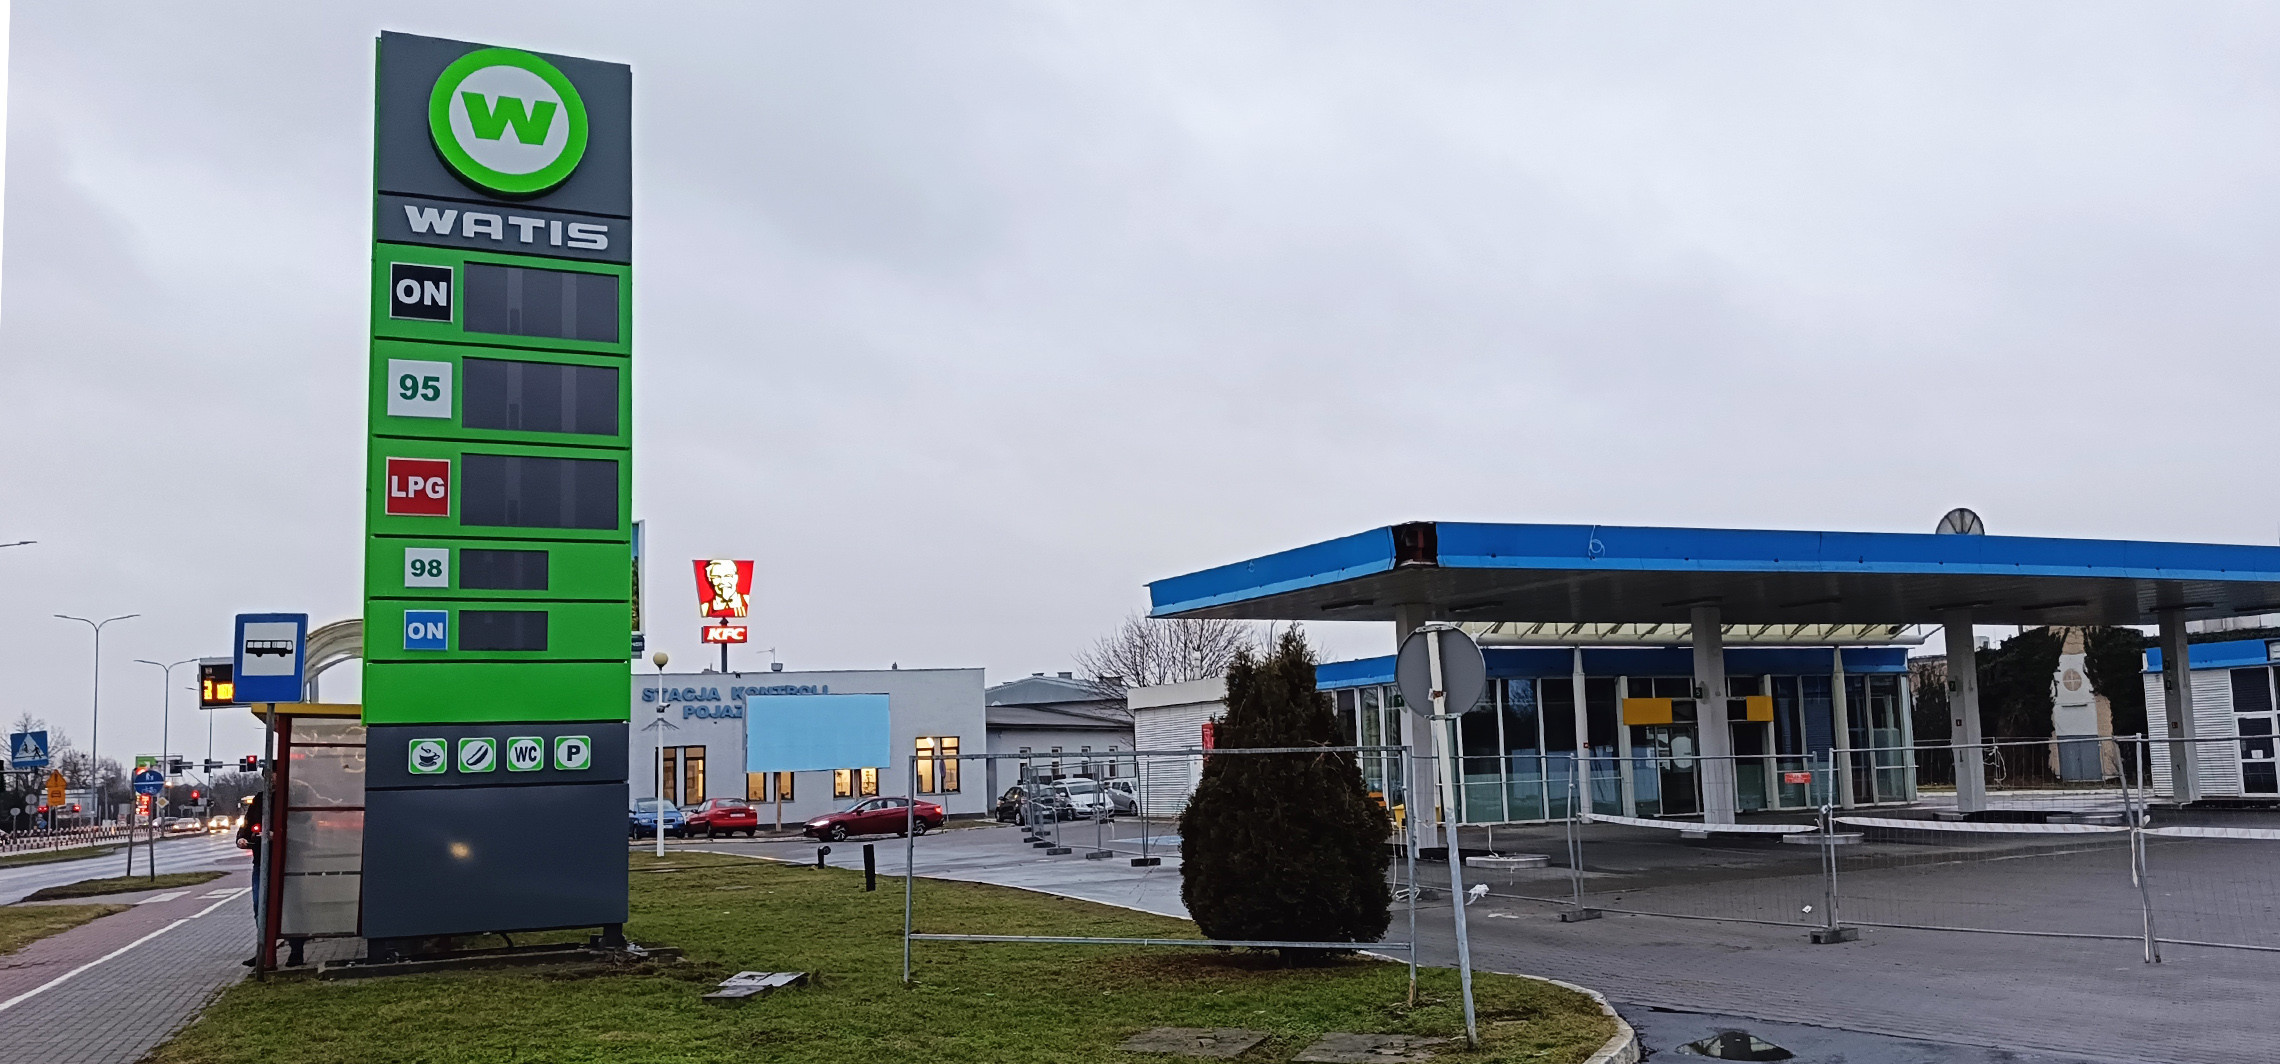 Inowrocław - W miejscu byłej stacji BP powstanie… inna stacja paliw